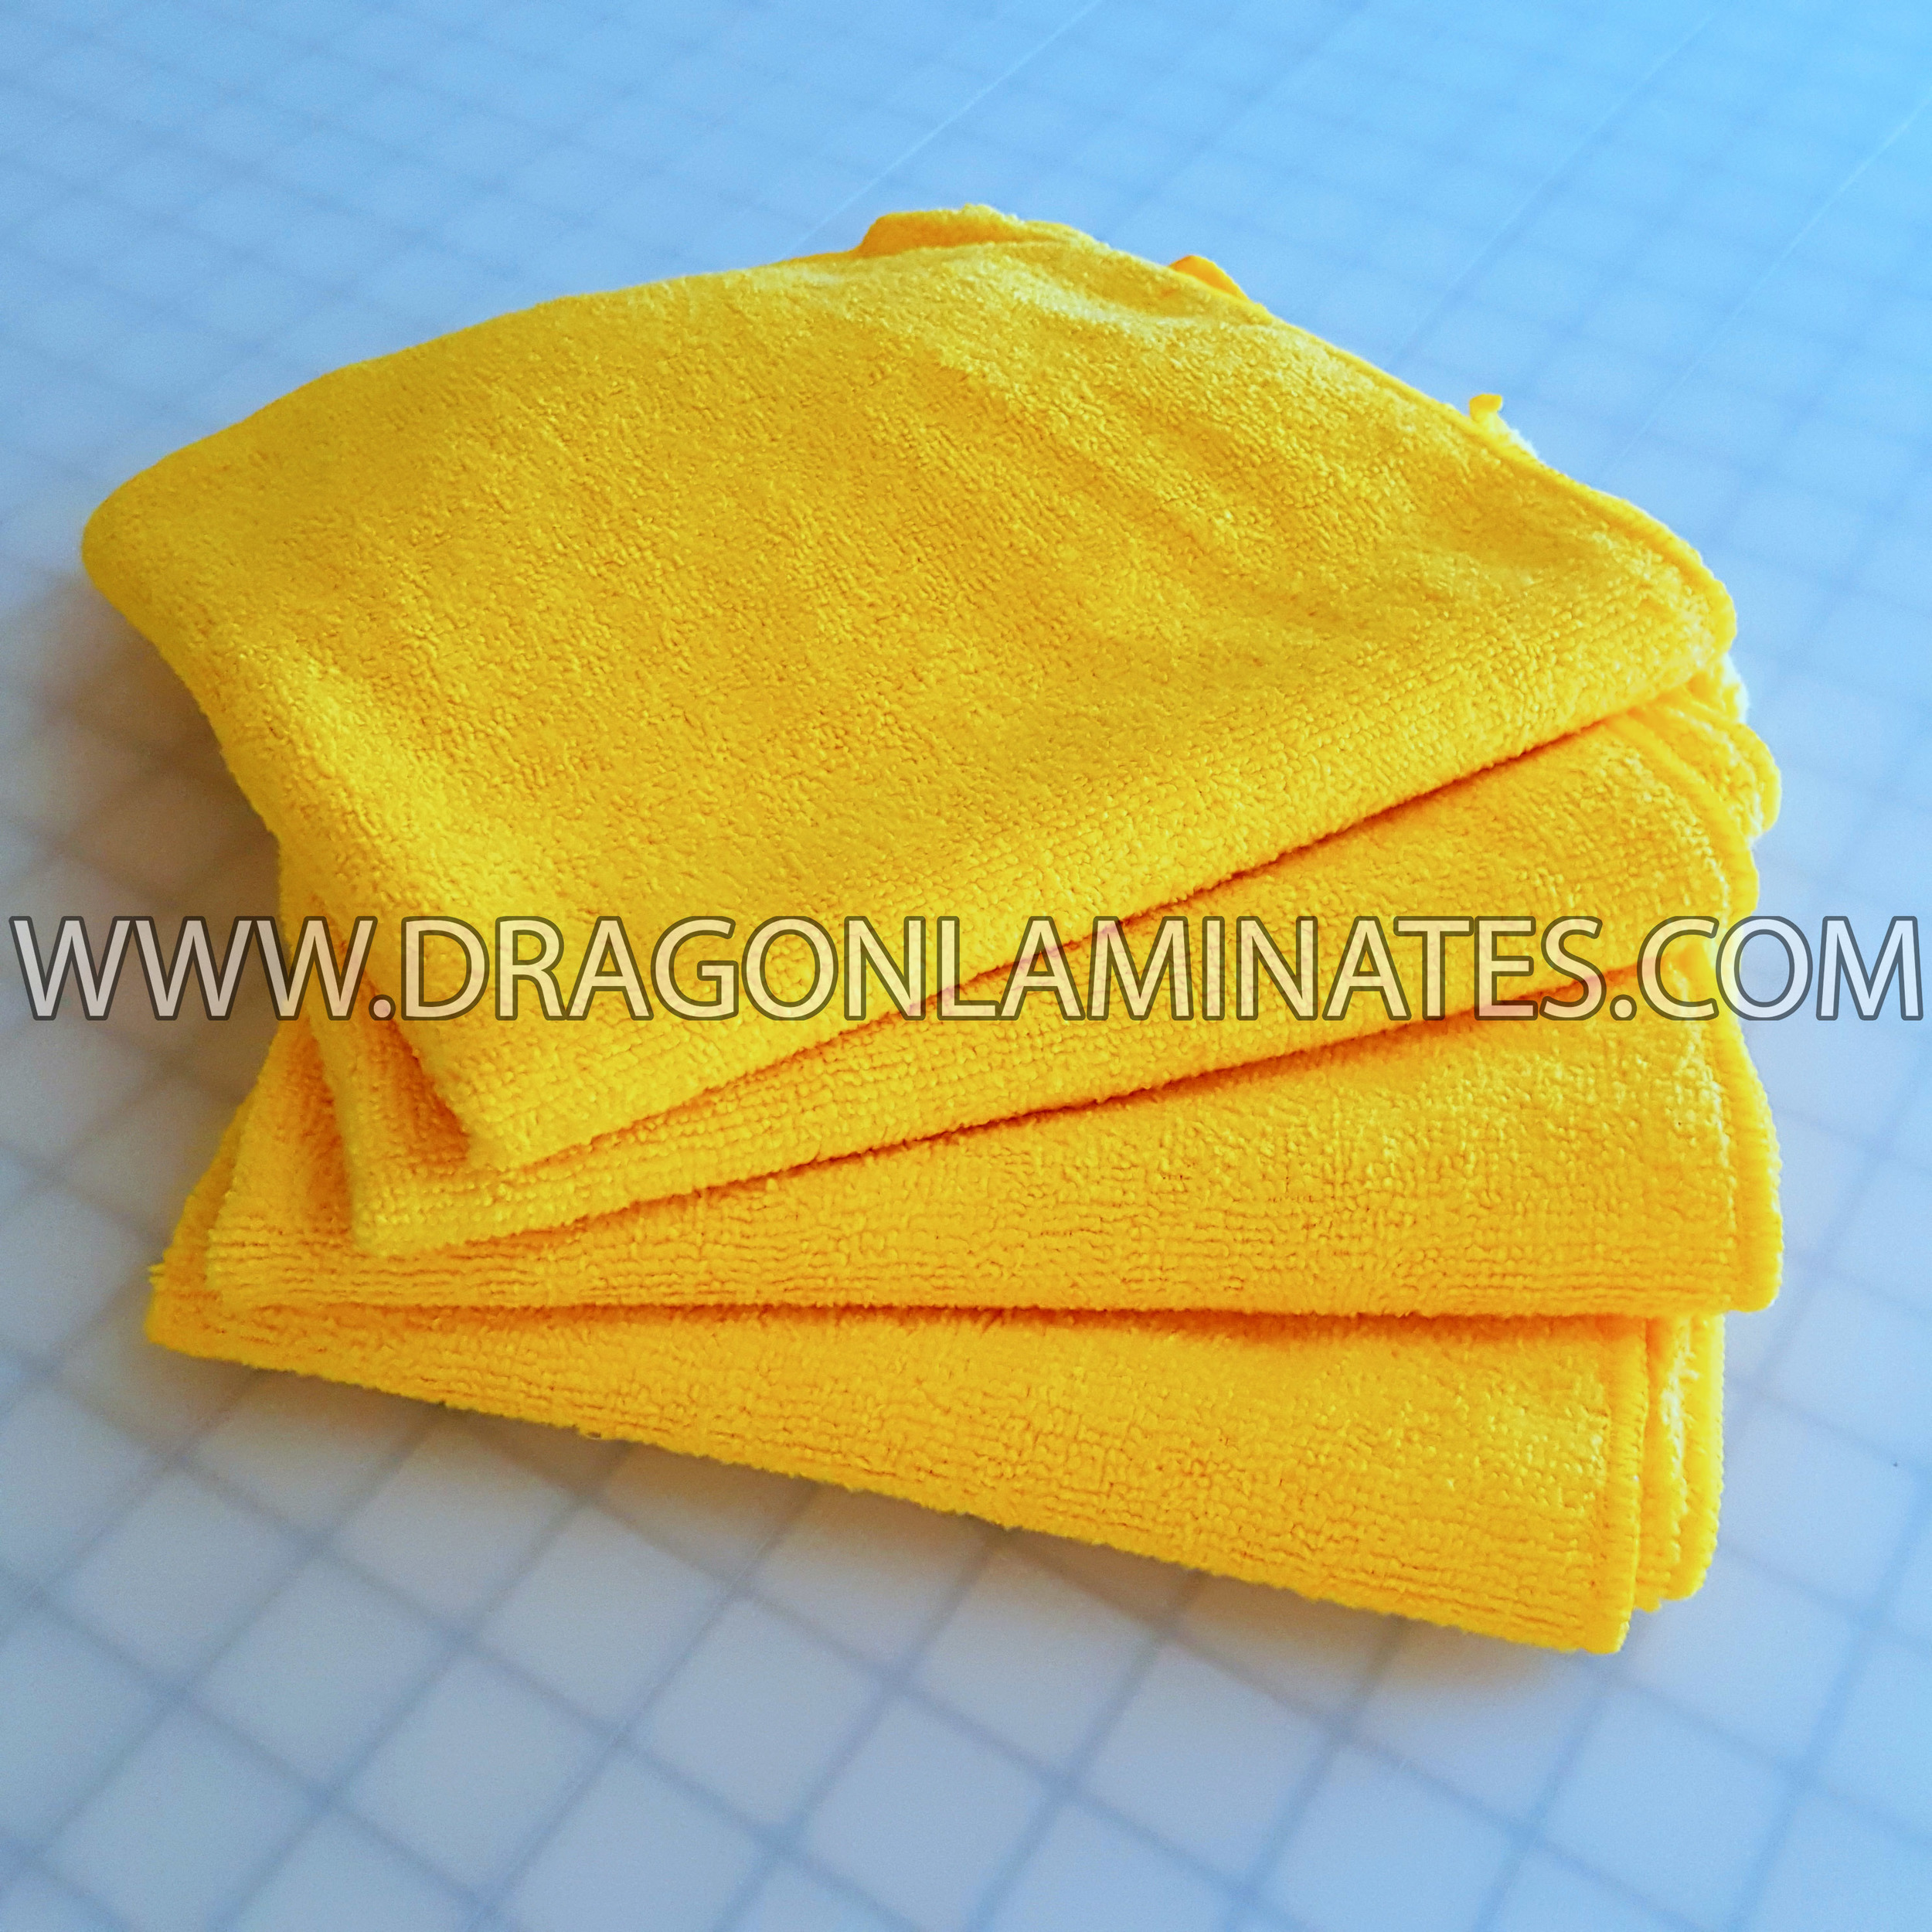 microfiber towel 1.jpg